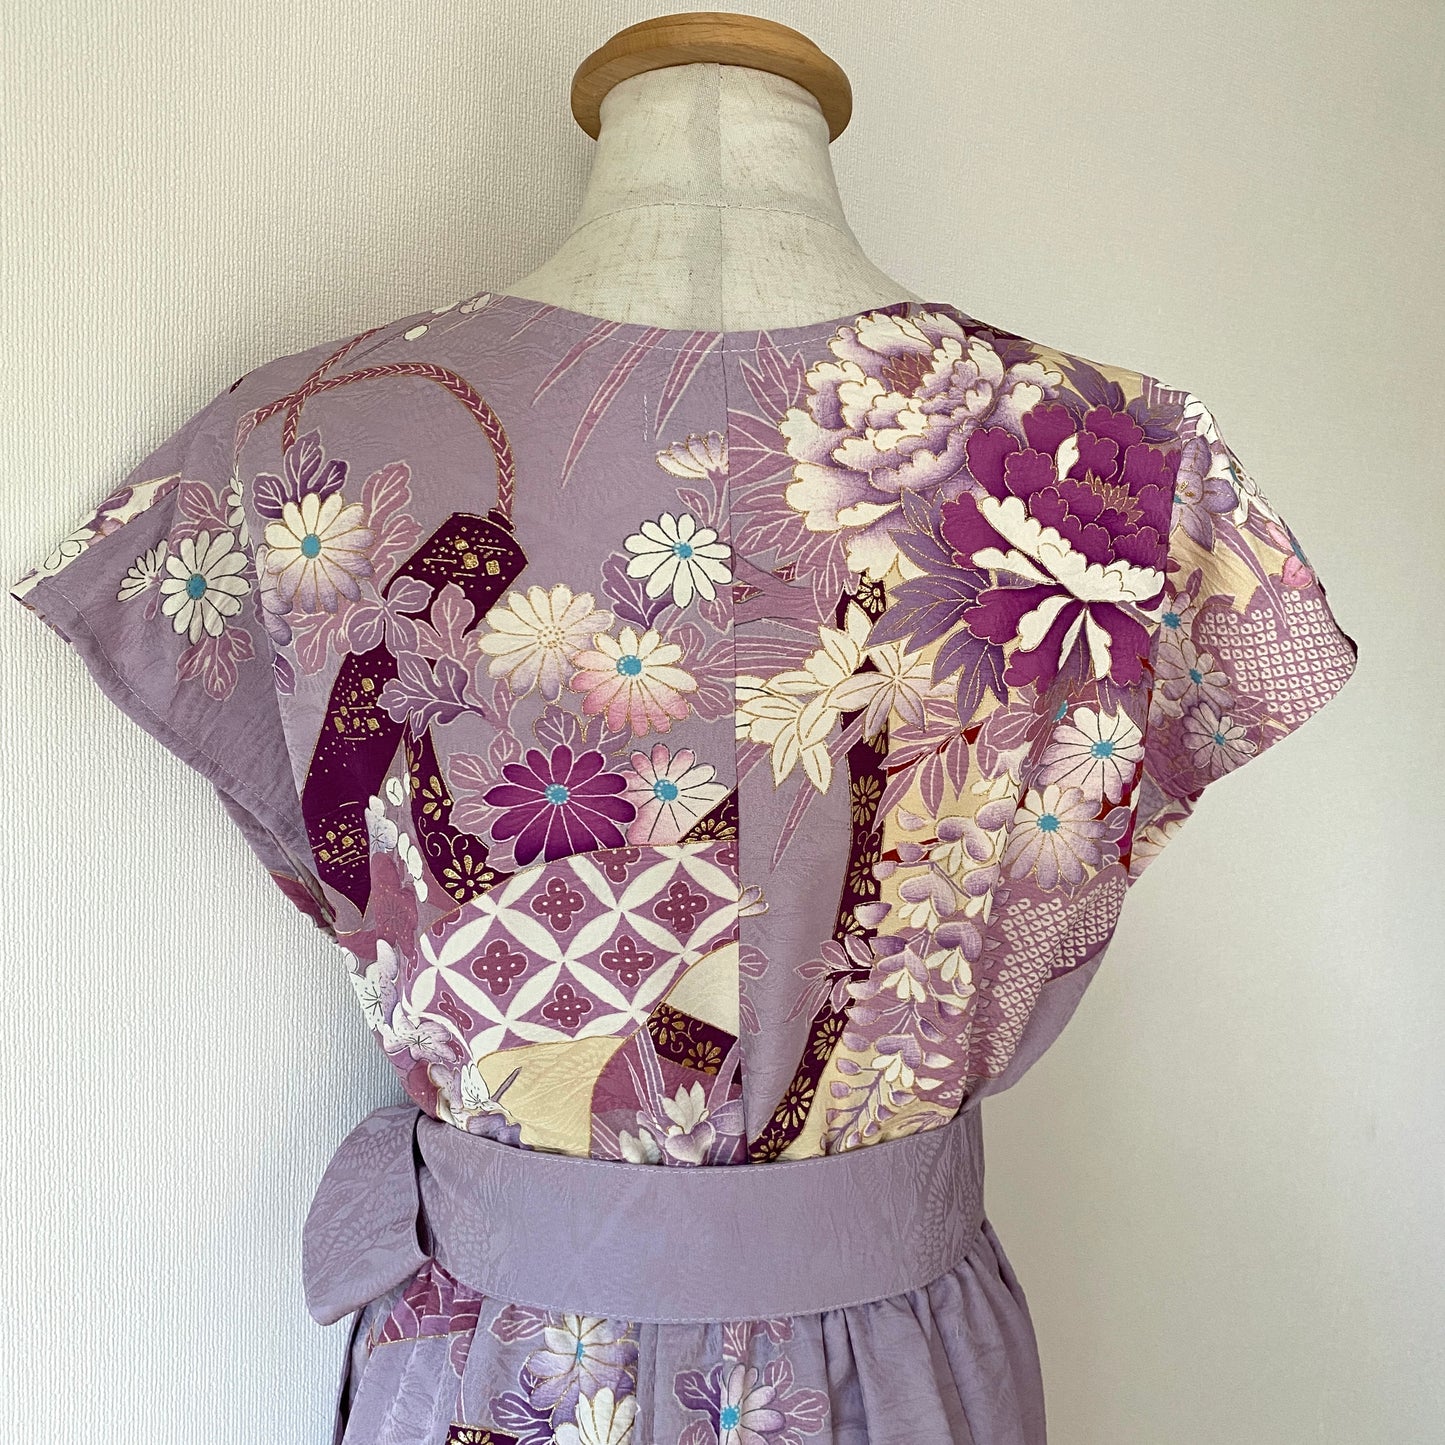 Kimono robe en soie, Furisode, fabriquée à la main, recyclée